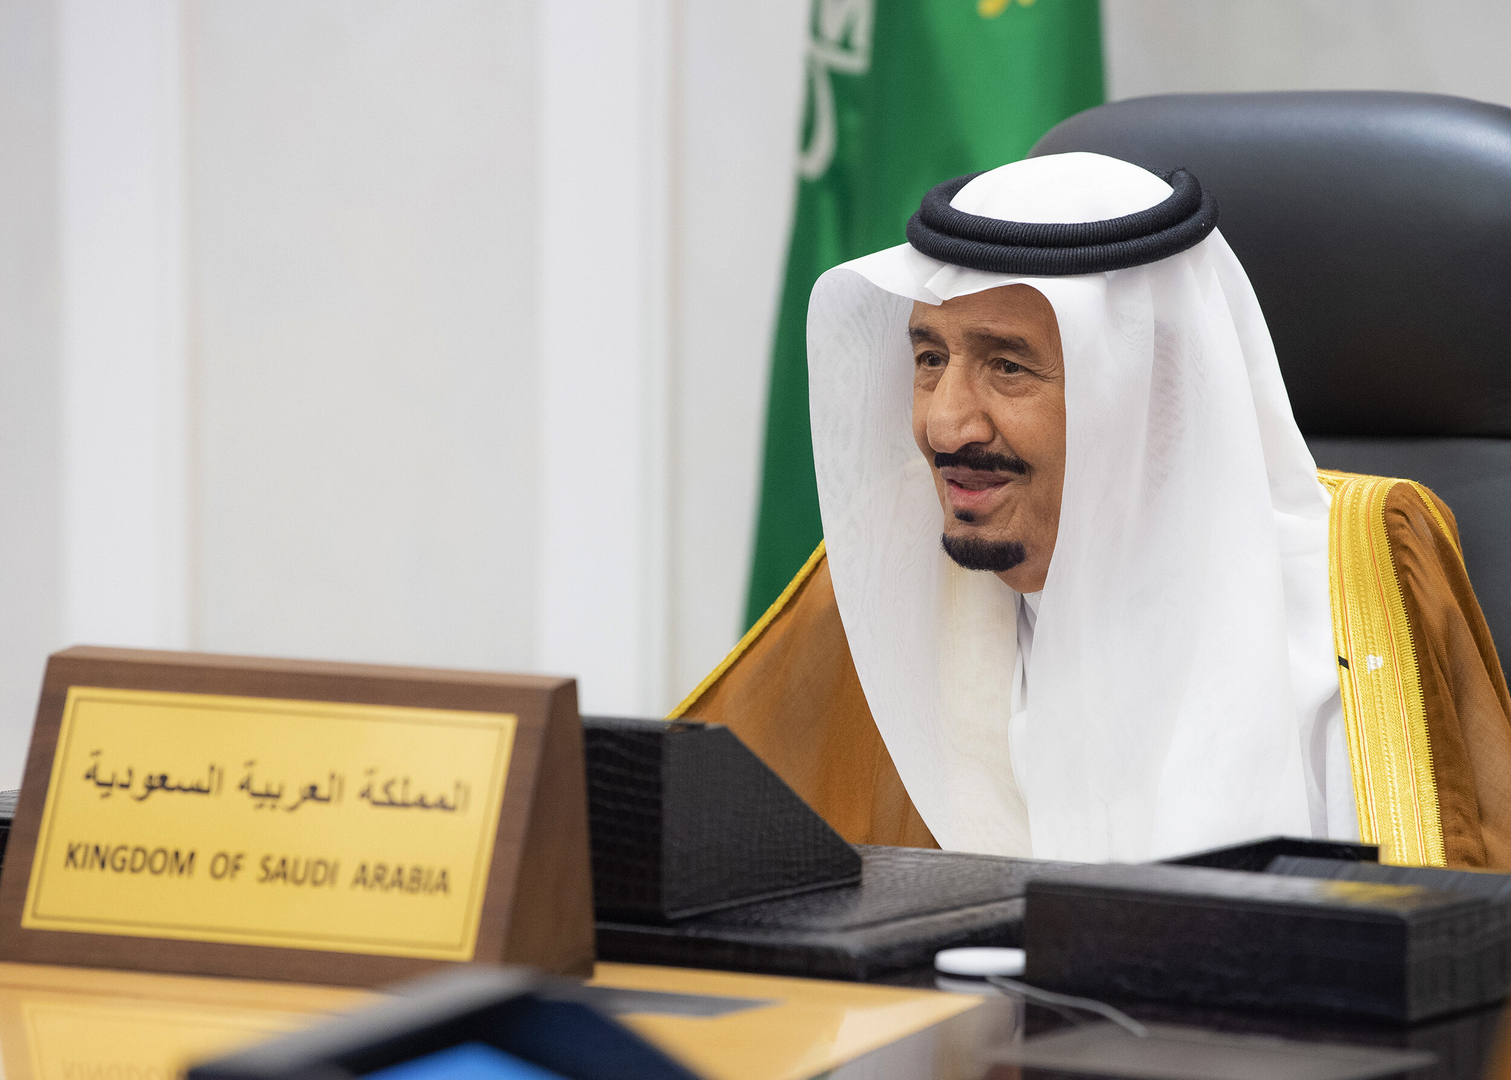 مواقع التواصل تضج بفيديو خروج الملك السعودي من المستشفى ورسالة منه للمواطنين وقادة الدول (فيديو)